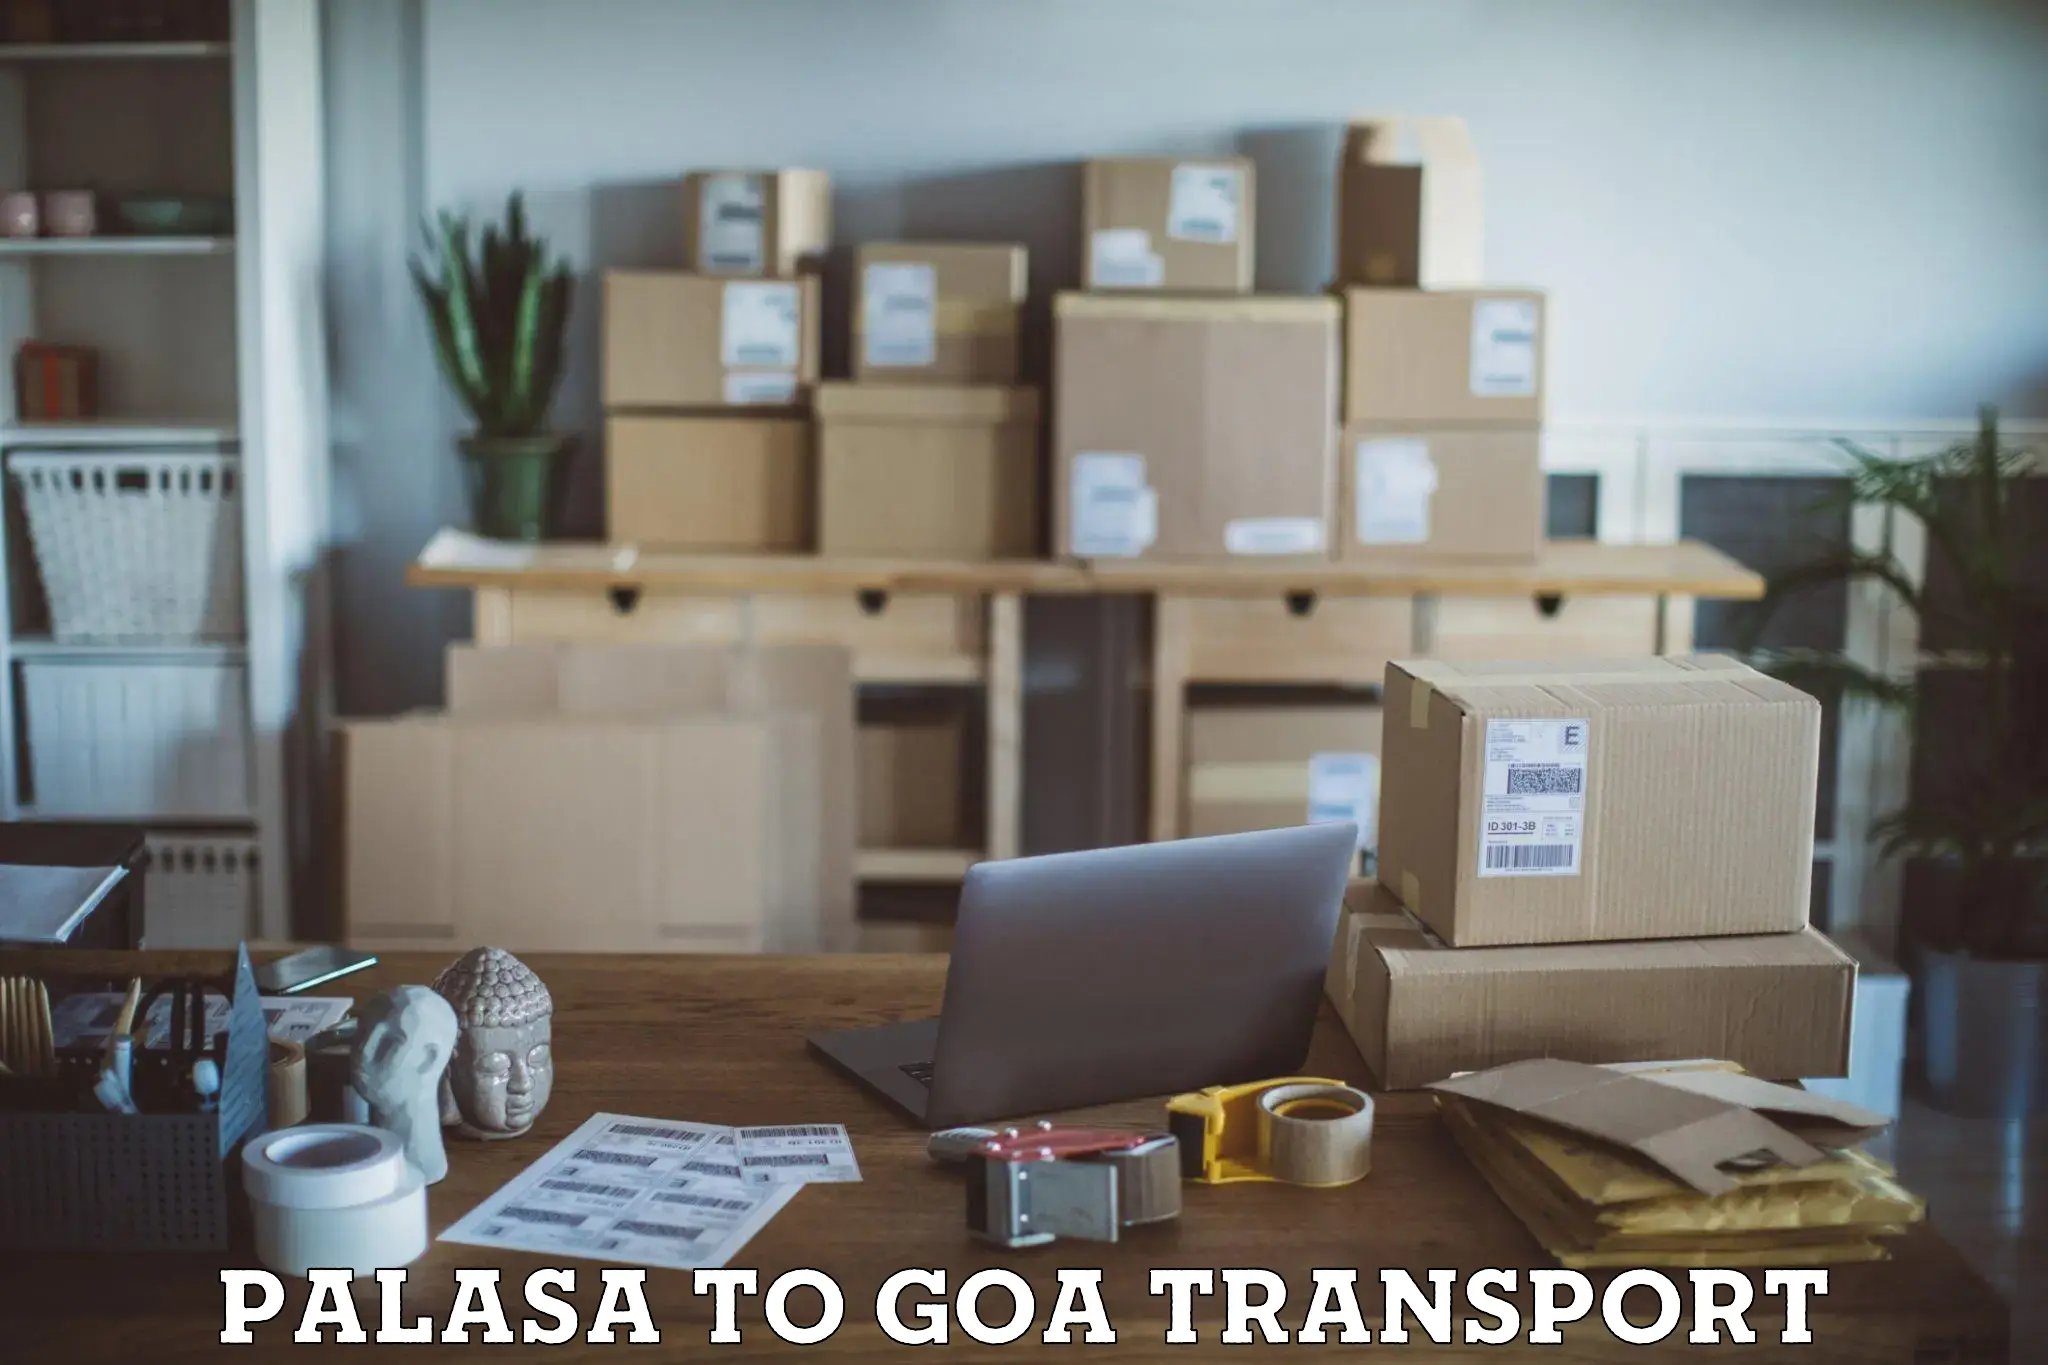 Door to door transport services Palasa to Goa University